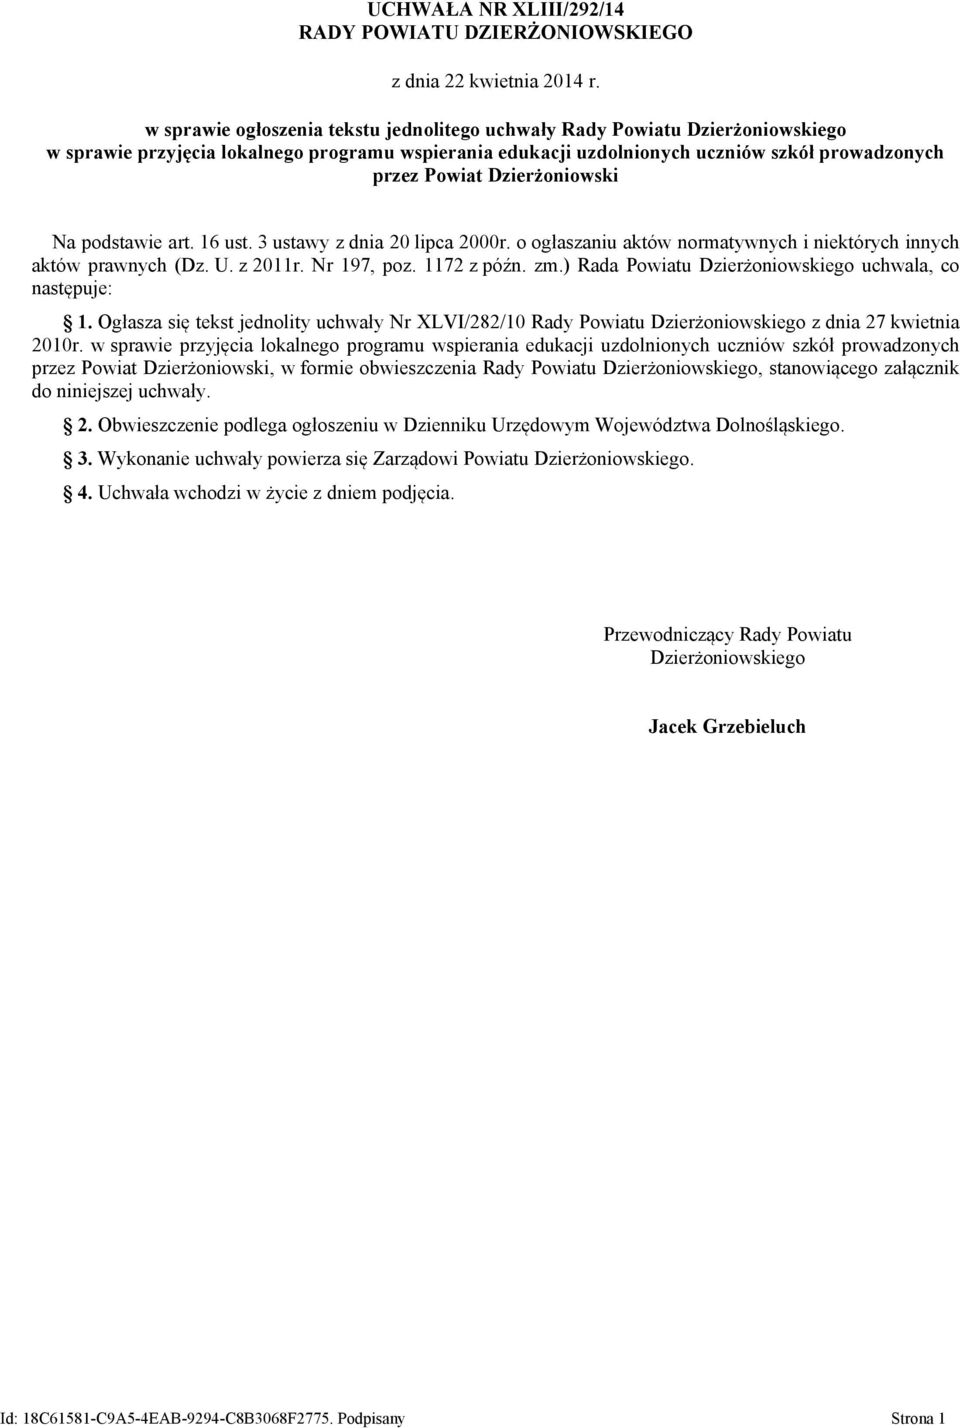 Dzierżoniowski Na podstawie art. 16 ust. 3 ustawy z dnia 20 lipca 2000r. o ogłaszaniu aktów normatywnych i niektórych innych aktów prawnych (Dz. U. z 2011r. Nr 197, poz. 1172 z późn. zm.